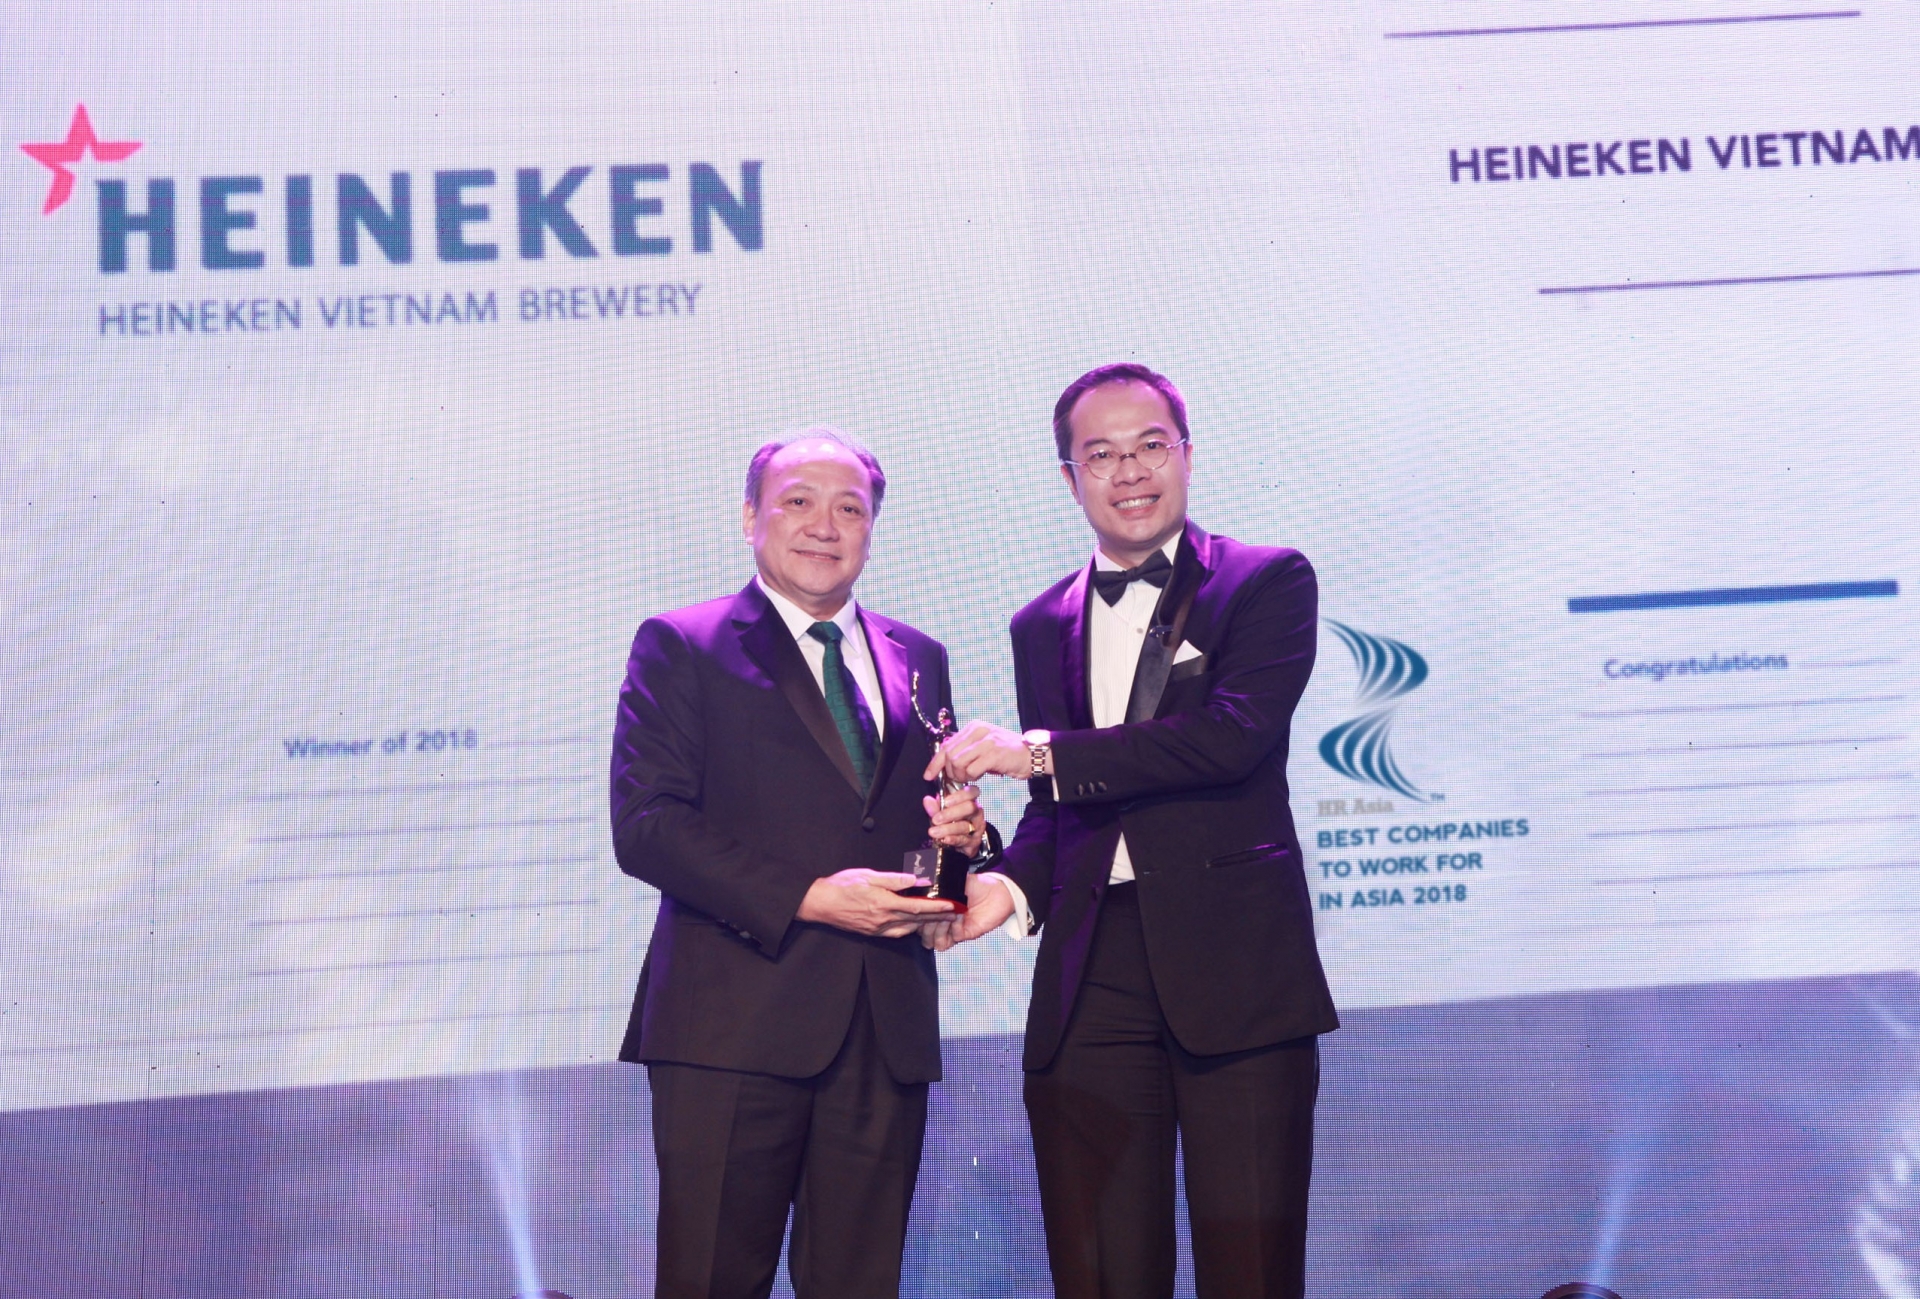 HEINEKEN Vietnam honoured amongst best companies to work for in Asia